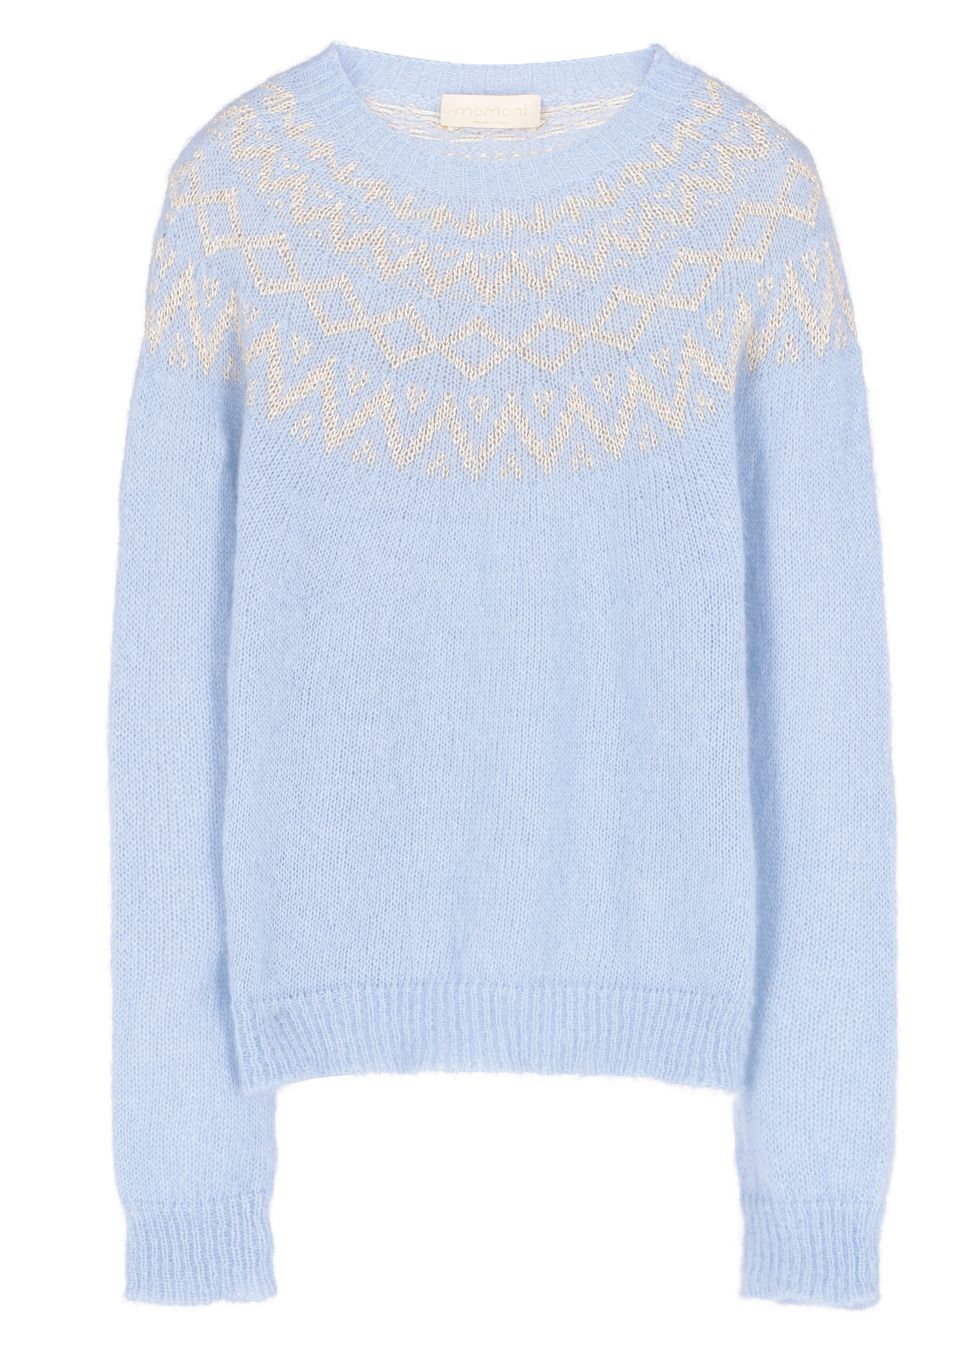 momoni maglione stile norvegese tendenza moda inverno 20202021